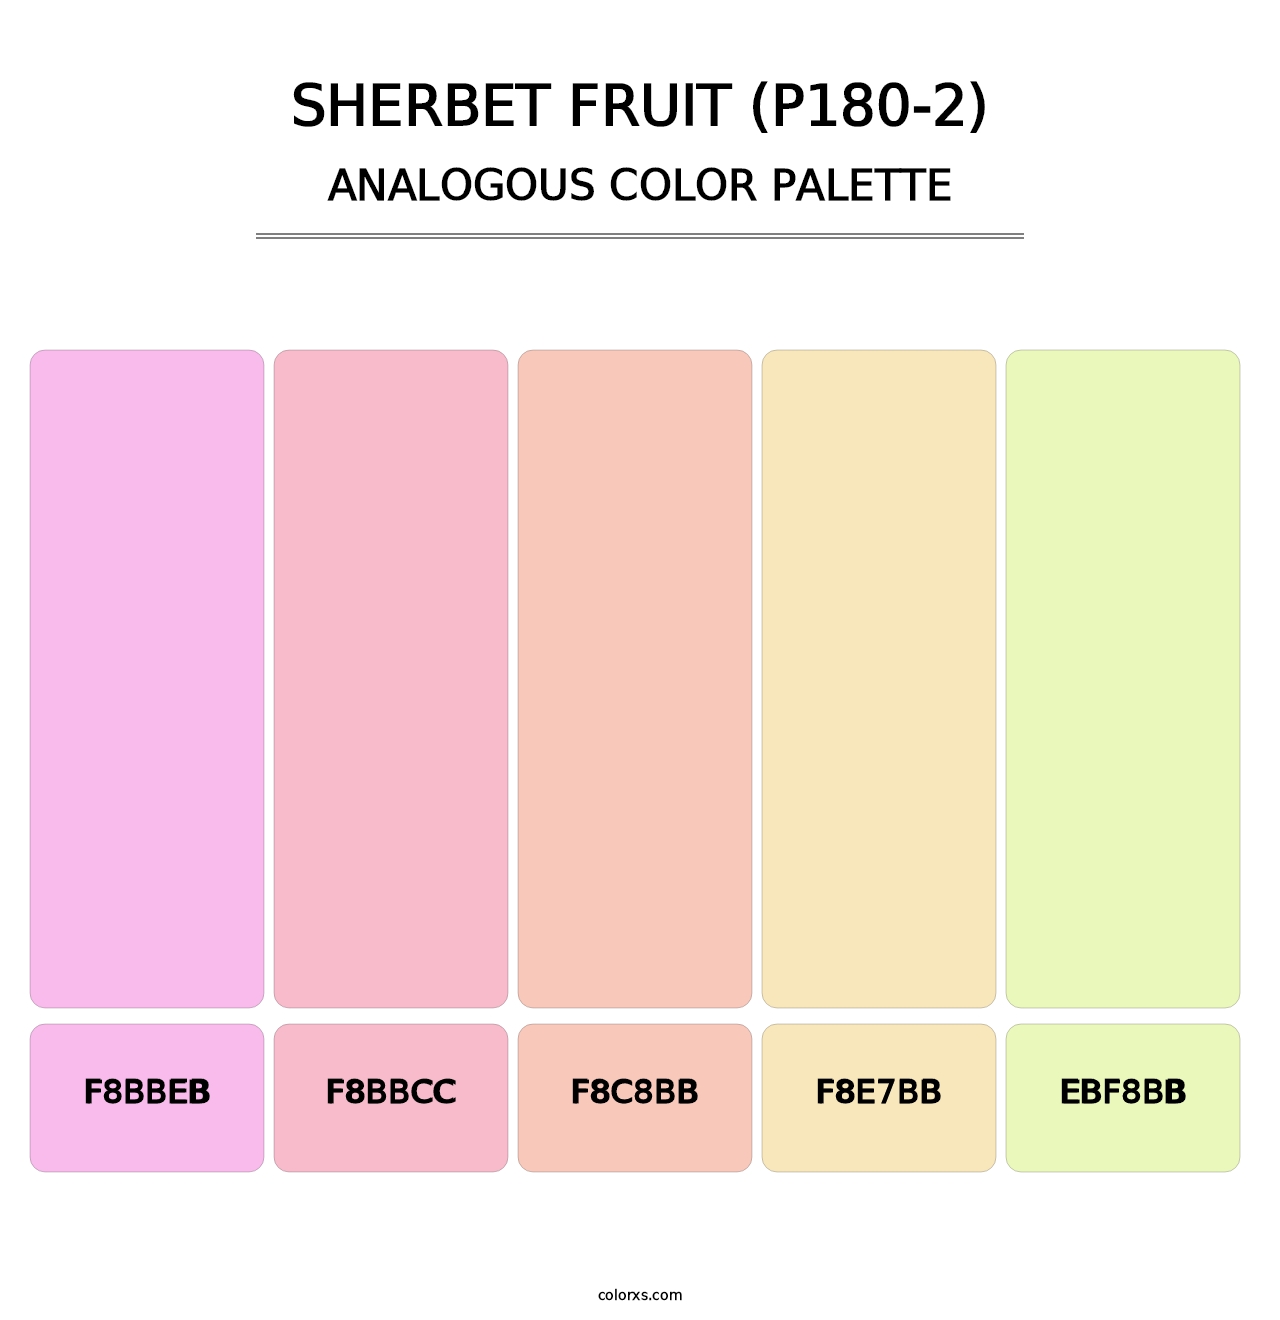 Sherbet Fruit (P180-2) - Analogous Color Palette